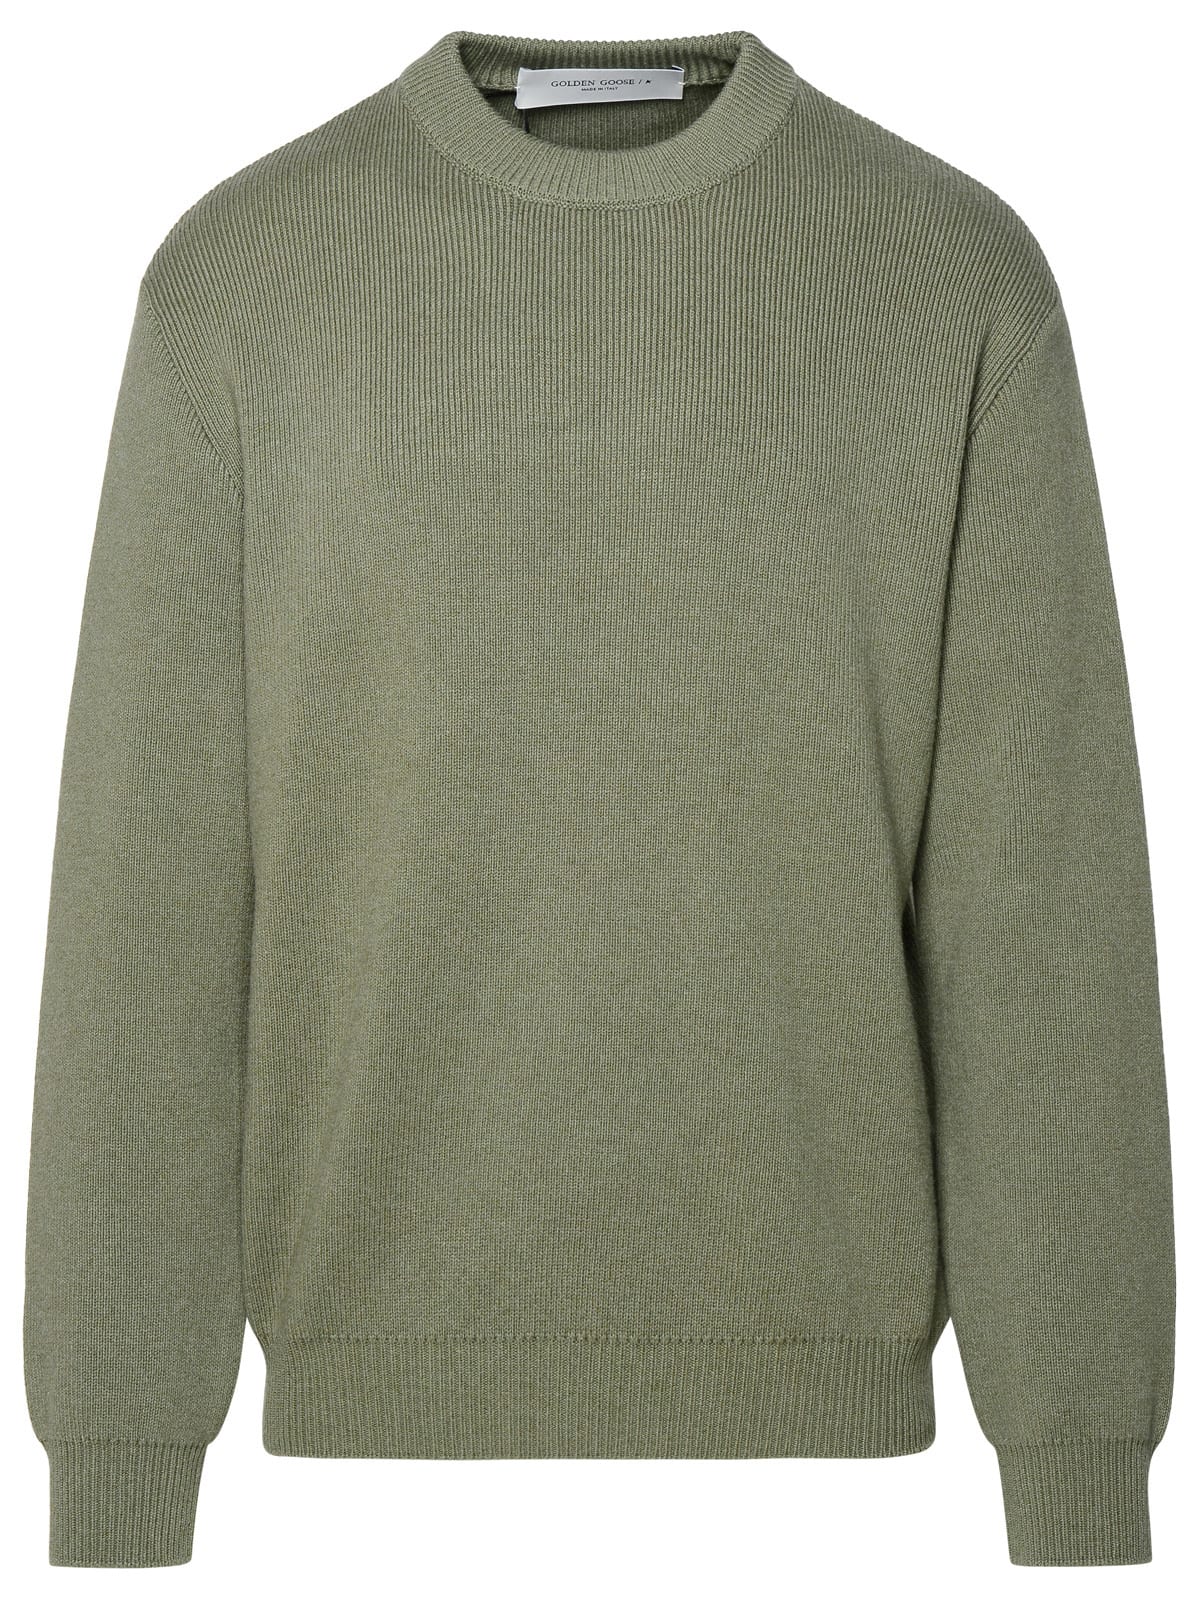 Green Cotton Blend Sweater